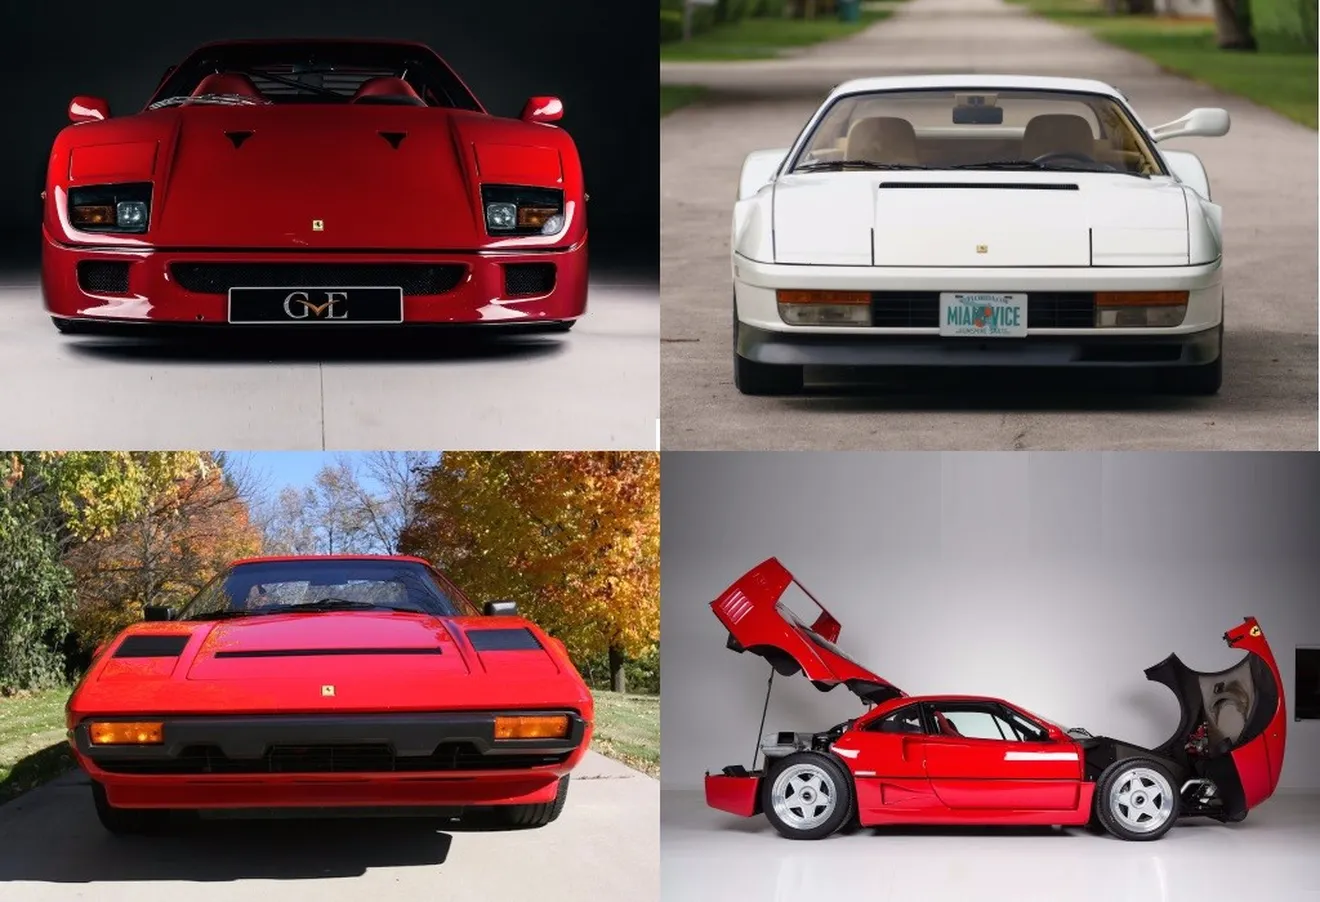 Ferraris célebres en venta: Desde el F40 de Eric Clapton hasta el Testarossa de Miami Vice